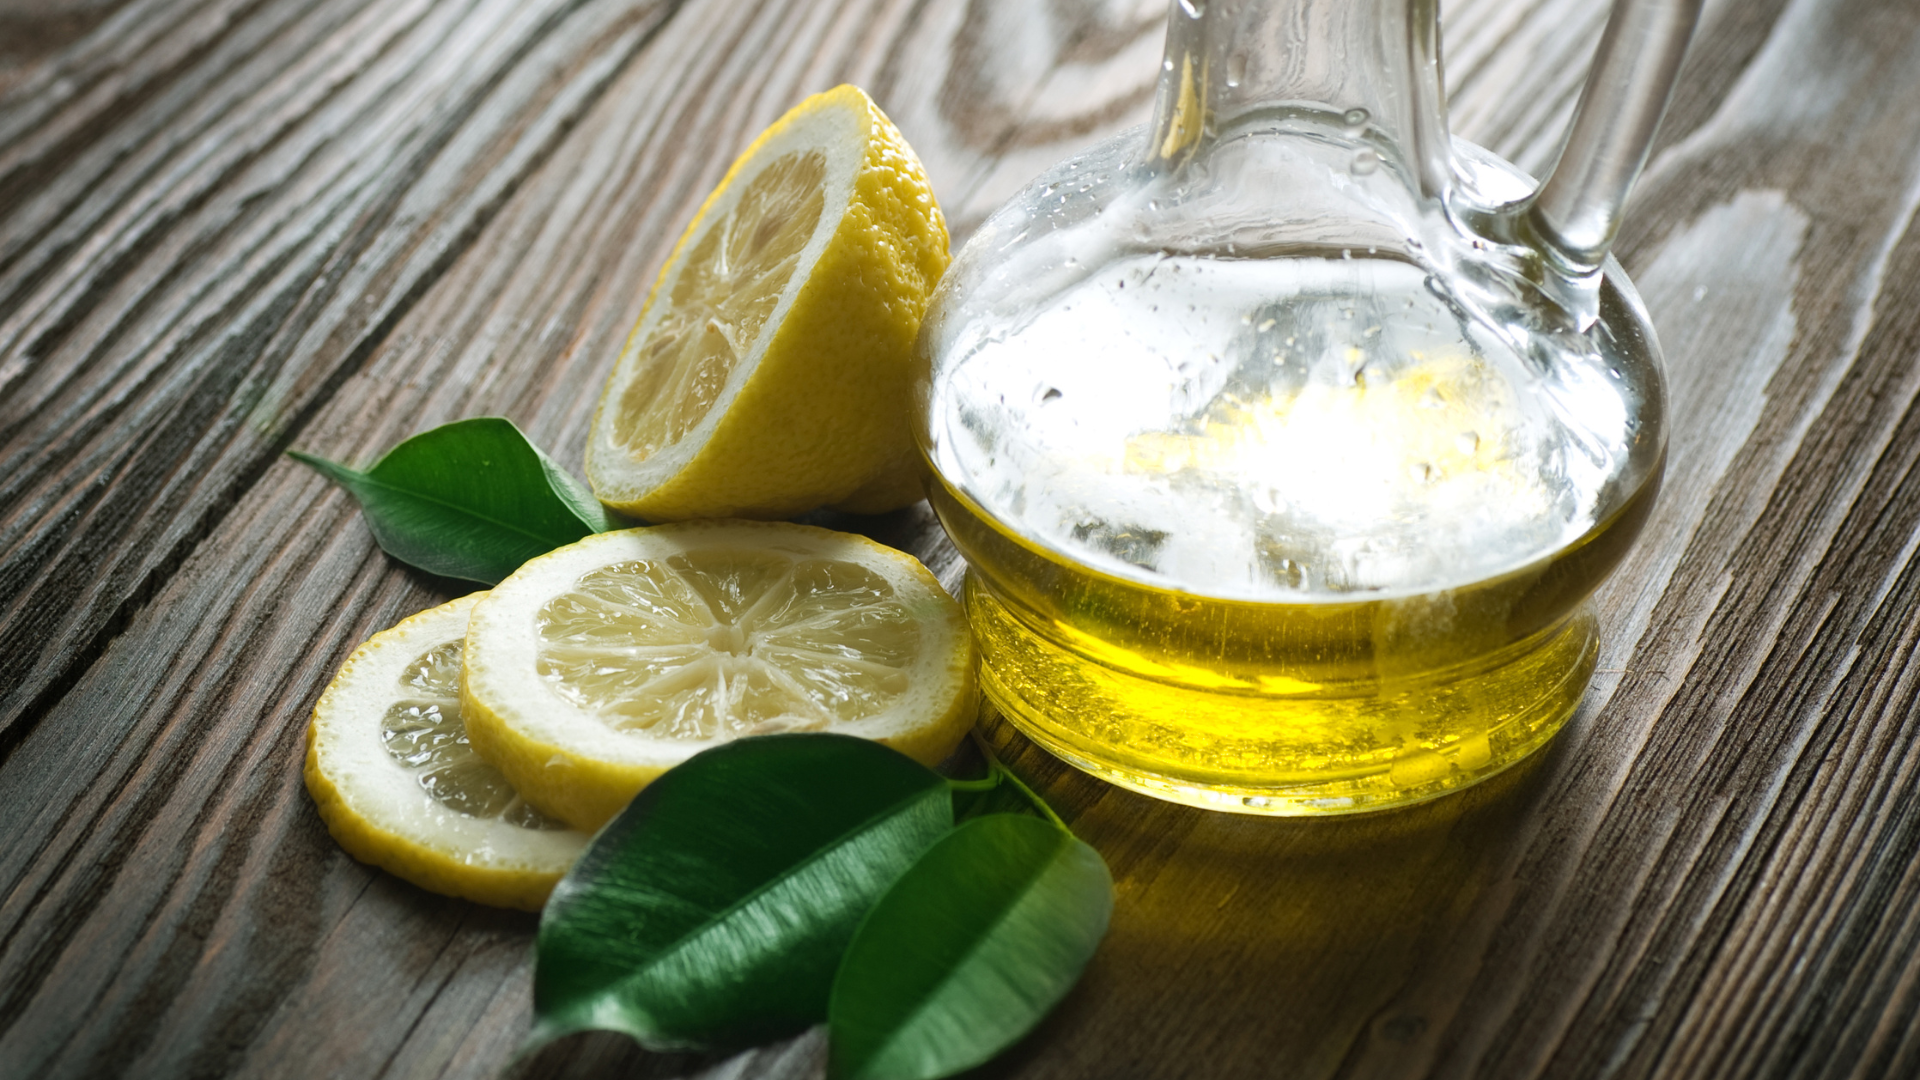 Qualidades nutricionais do azeite e do limão